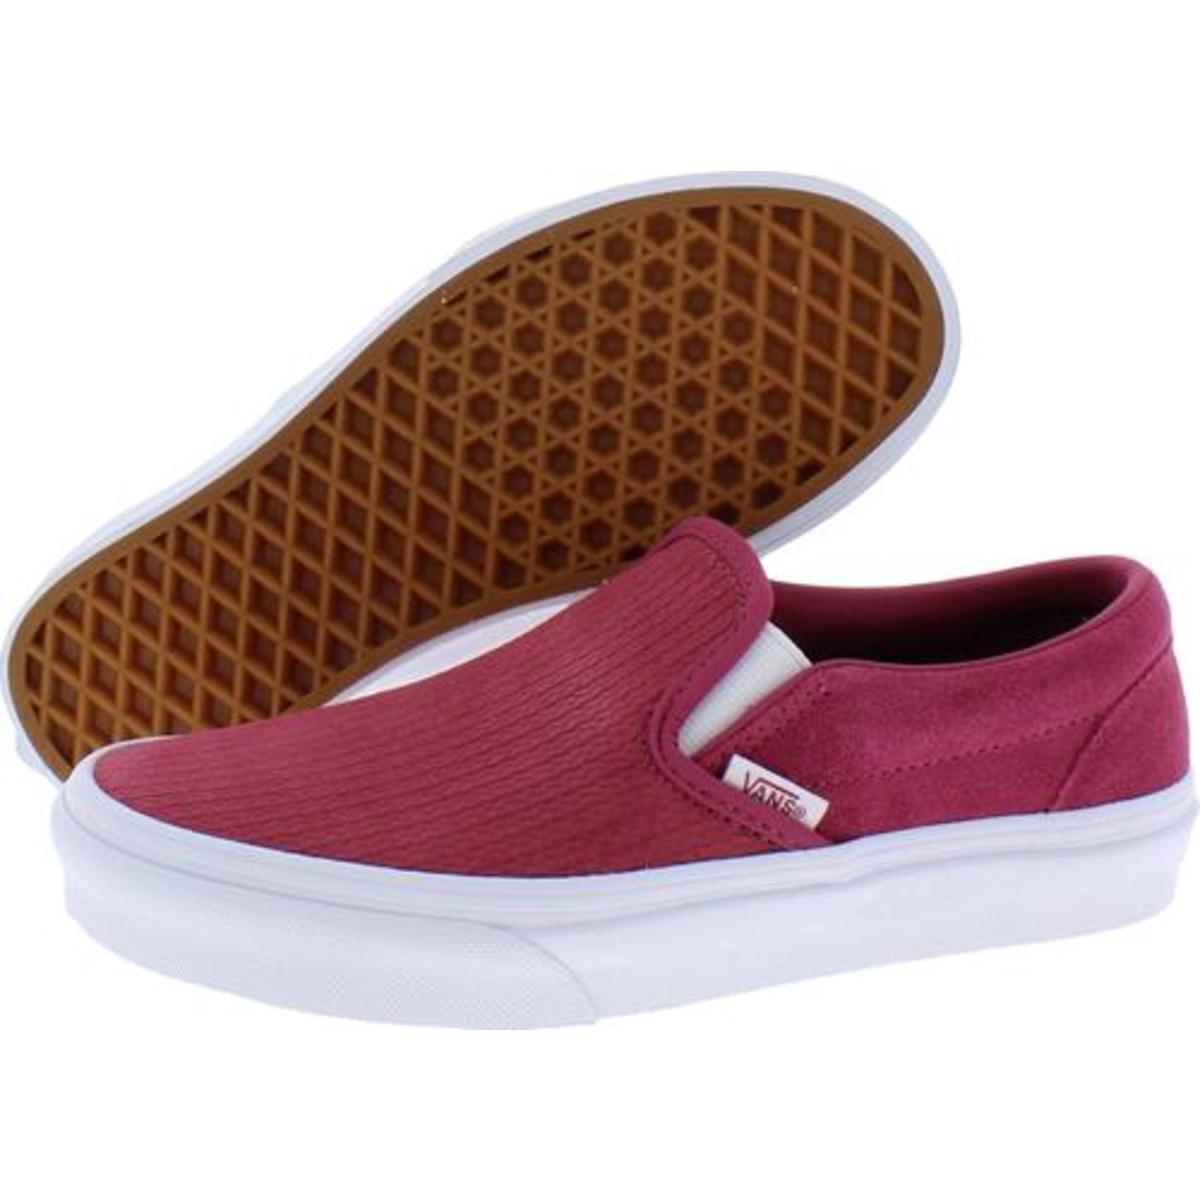 Vans Womens Red Suede Slip On Skate Shoes Sneakers 5.5 Medium (B,M ...